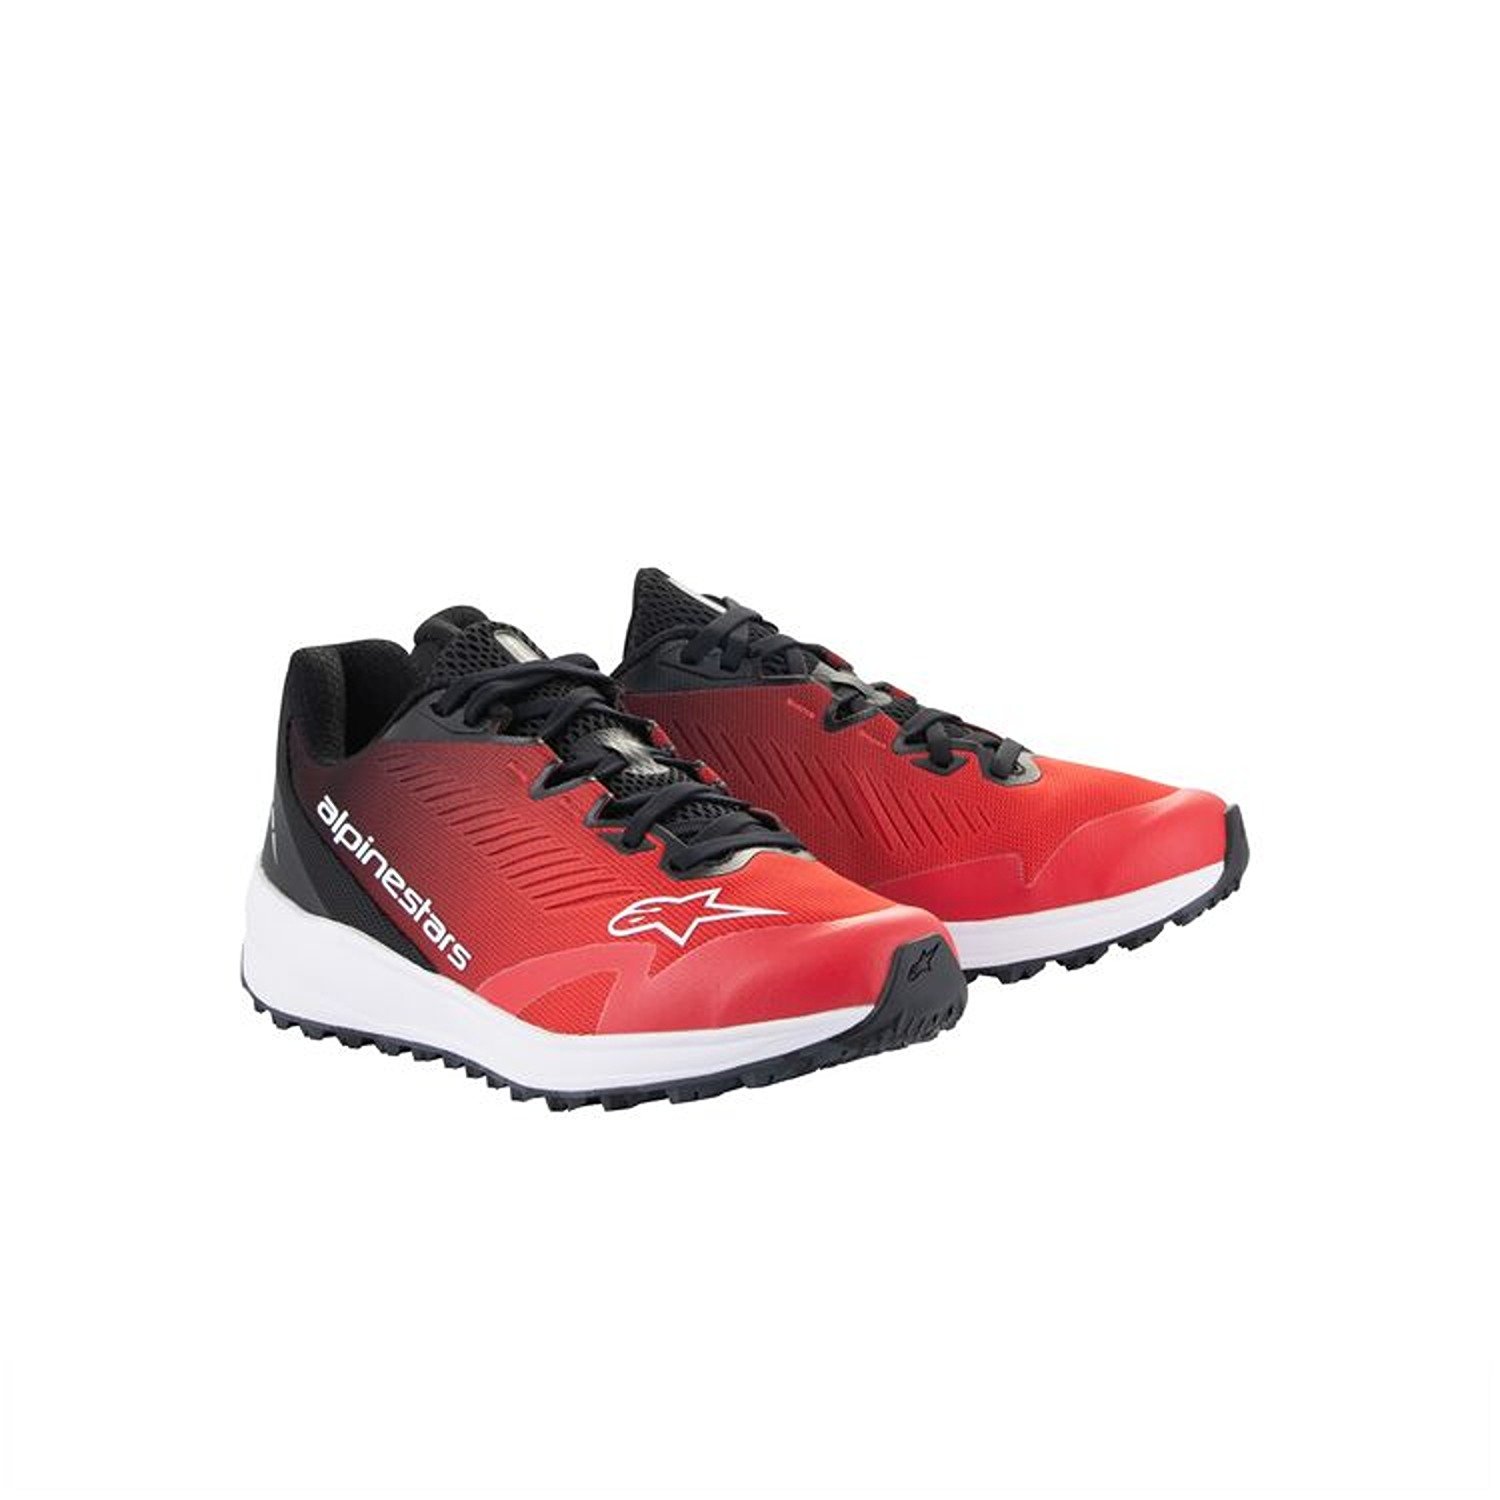 Image of Alpinestars Meta Road V2 Shoes Red Black White Größe US 13